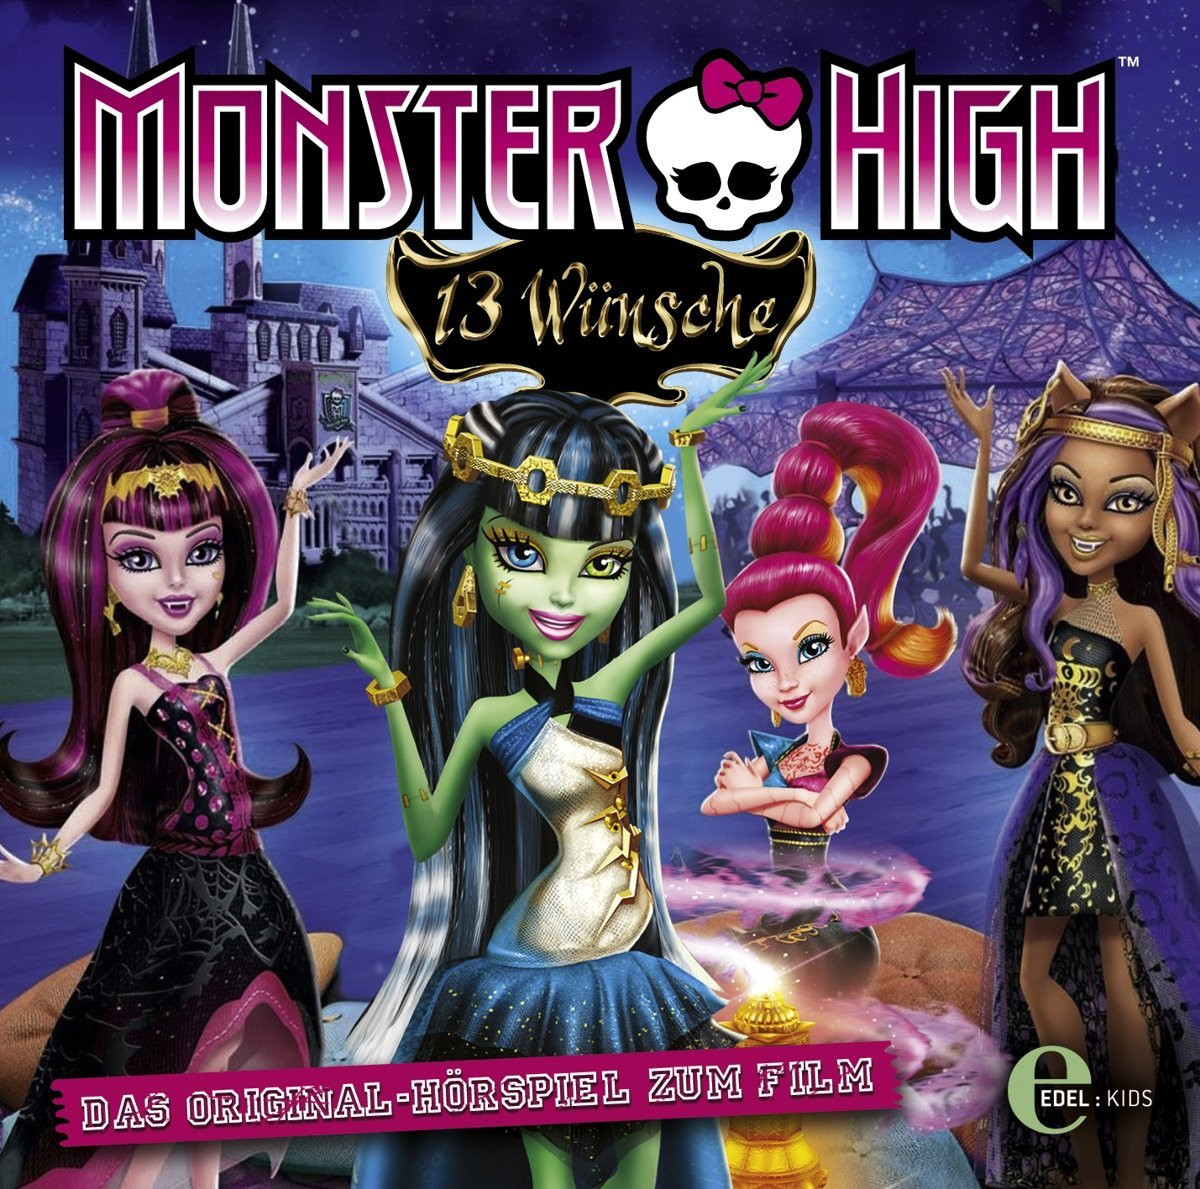 Monster High - Folge 2: 13 Wünsche (Originalhörspiel)